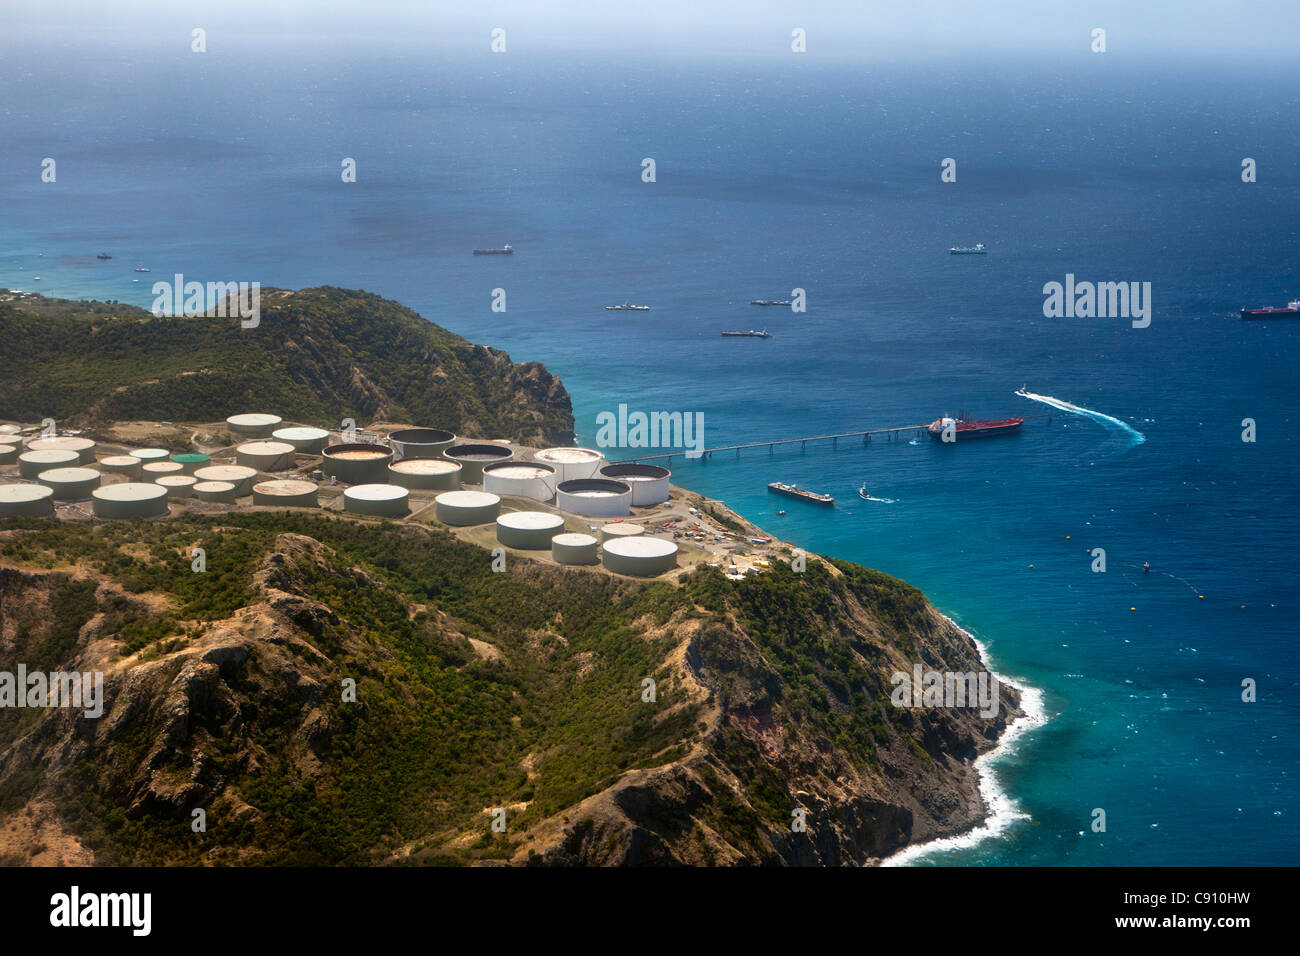 Oranjestad, Sint Eustatius Insel, Niederländische Karibik. Tanker und Statia Oil Terminal (Öl-Umschlag und Lagerung). Stockfoto